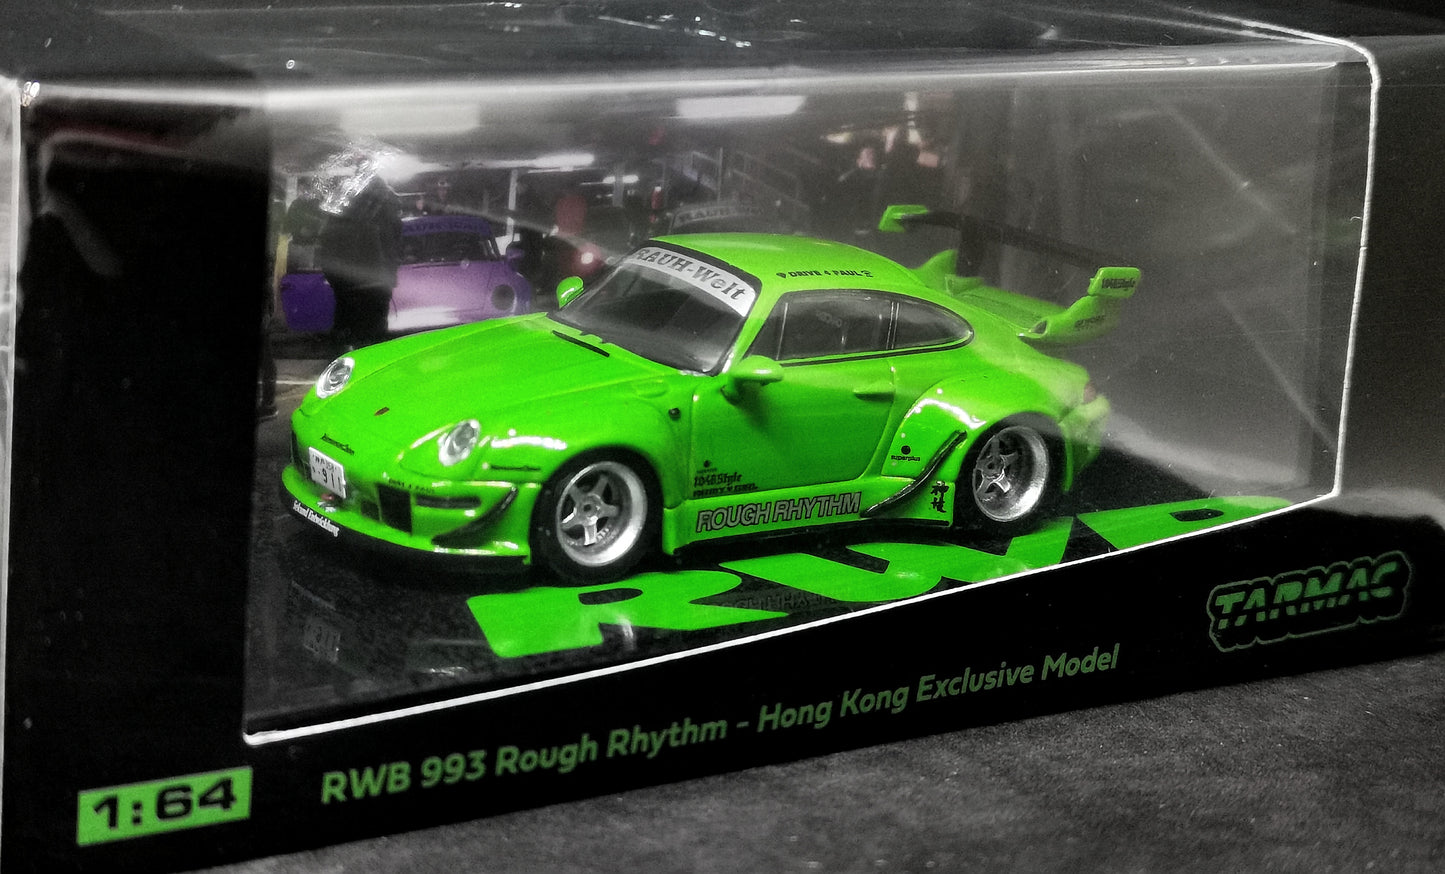 Tarmac Works Porsche 993 RWB Rough Rhythm 1:64 Scale